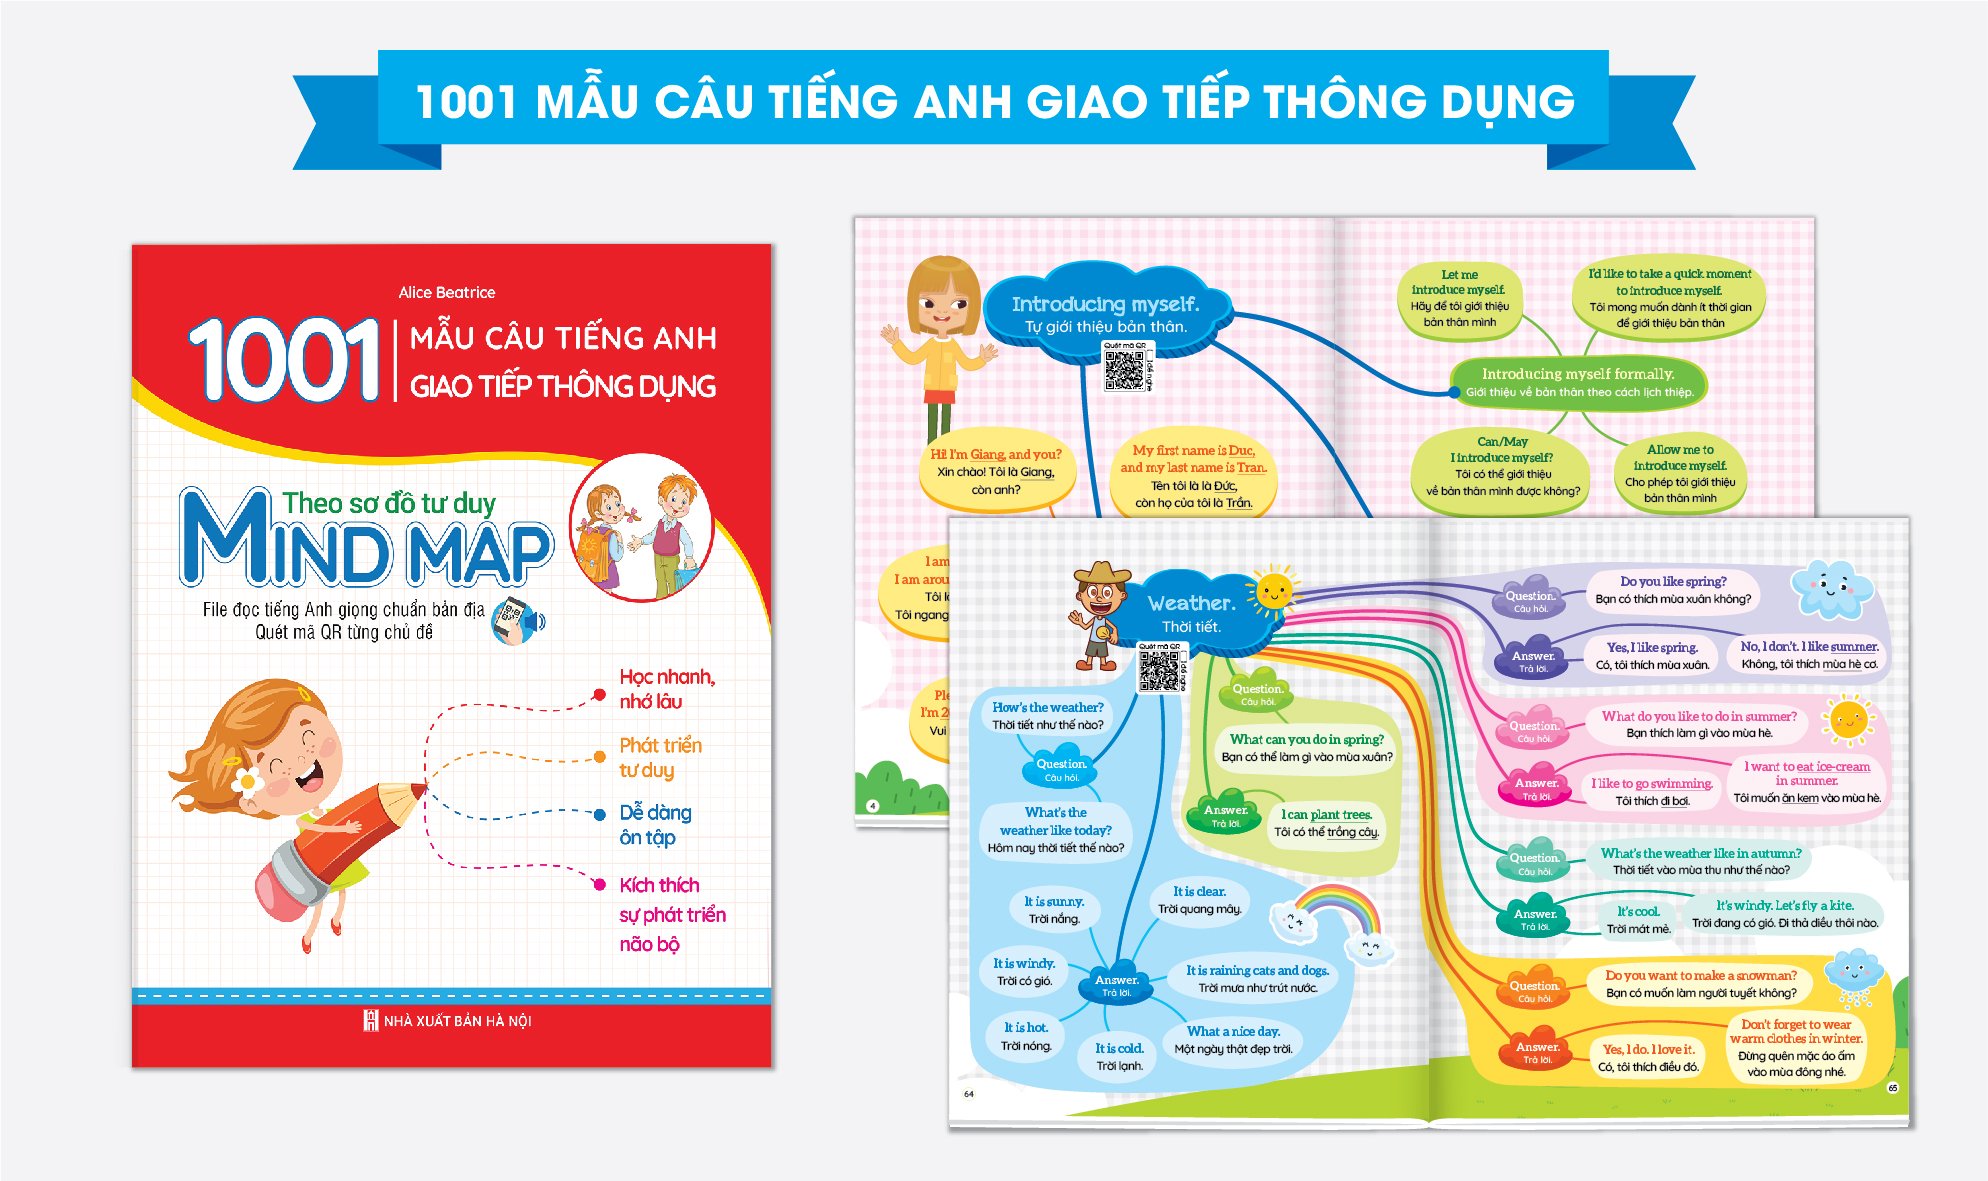 Bé Học Tiếng Anh Combo 2 Cuốn 1001 Mẫu Câu Tiếng Anh Giao Tiếp Thông Dụng Và Chinh Phục Từ Vựng Tiếng Anh Theo Sơ Đồ Tư Duy Mind Map (Kèm file nghe giọng chuẩn)